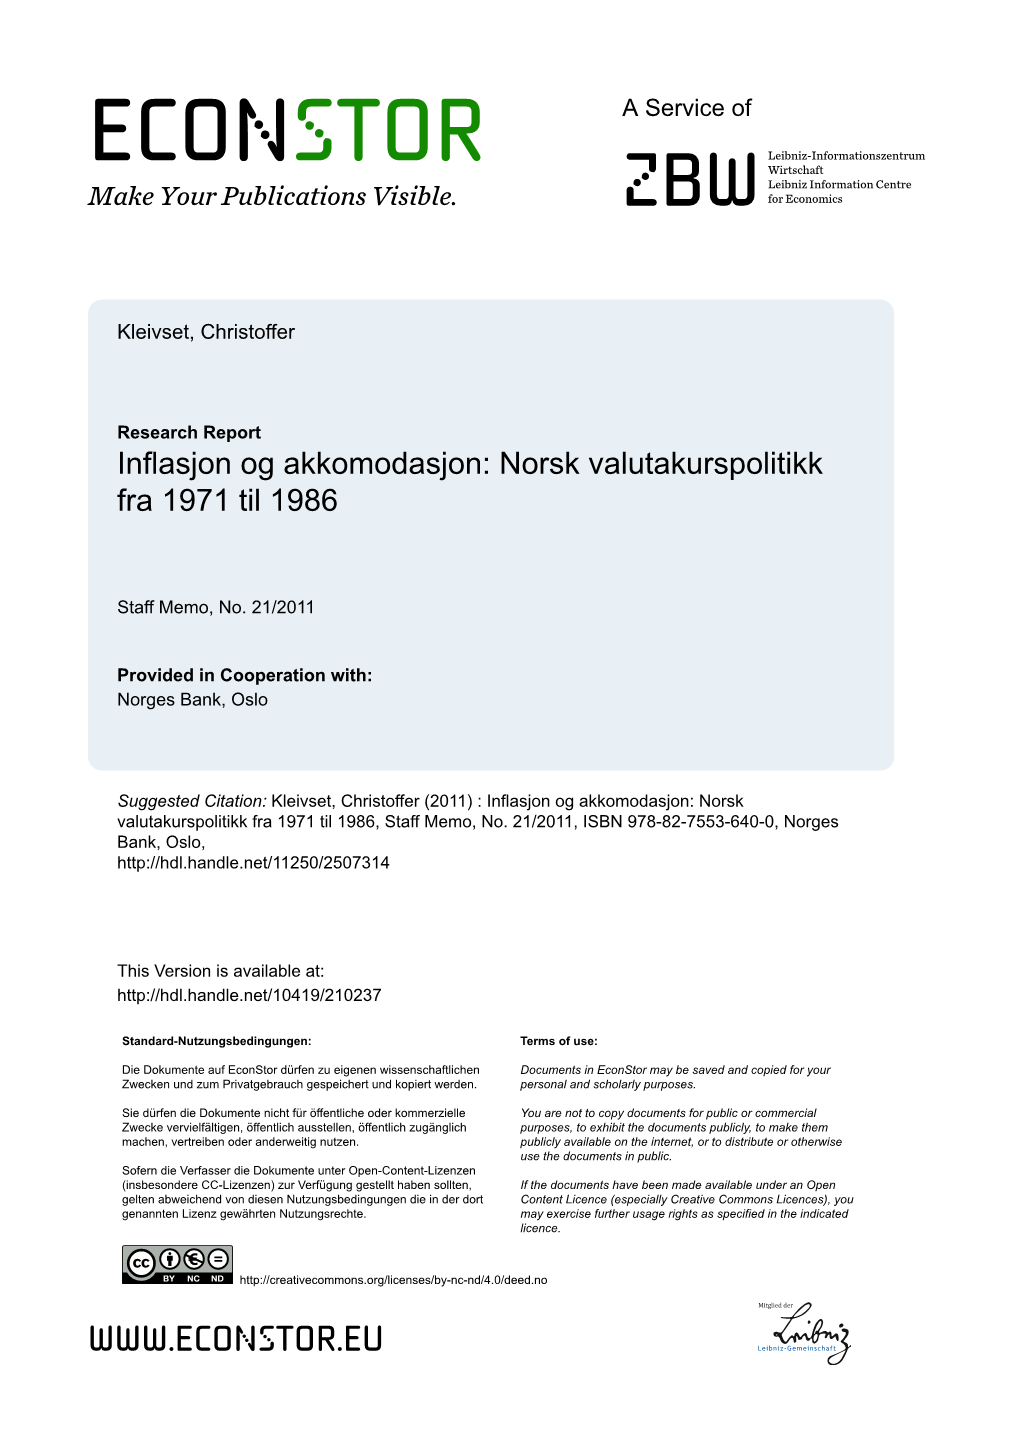 Inflasjon Og Akkomodasjon : Norsk Valutakurspolitikk Fra 1971 Til 1986. Christoffer Kleivset (Norges Bank Staff Memo 21/2011)